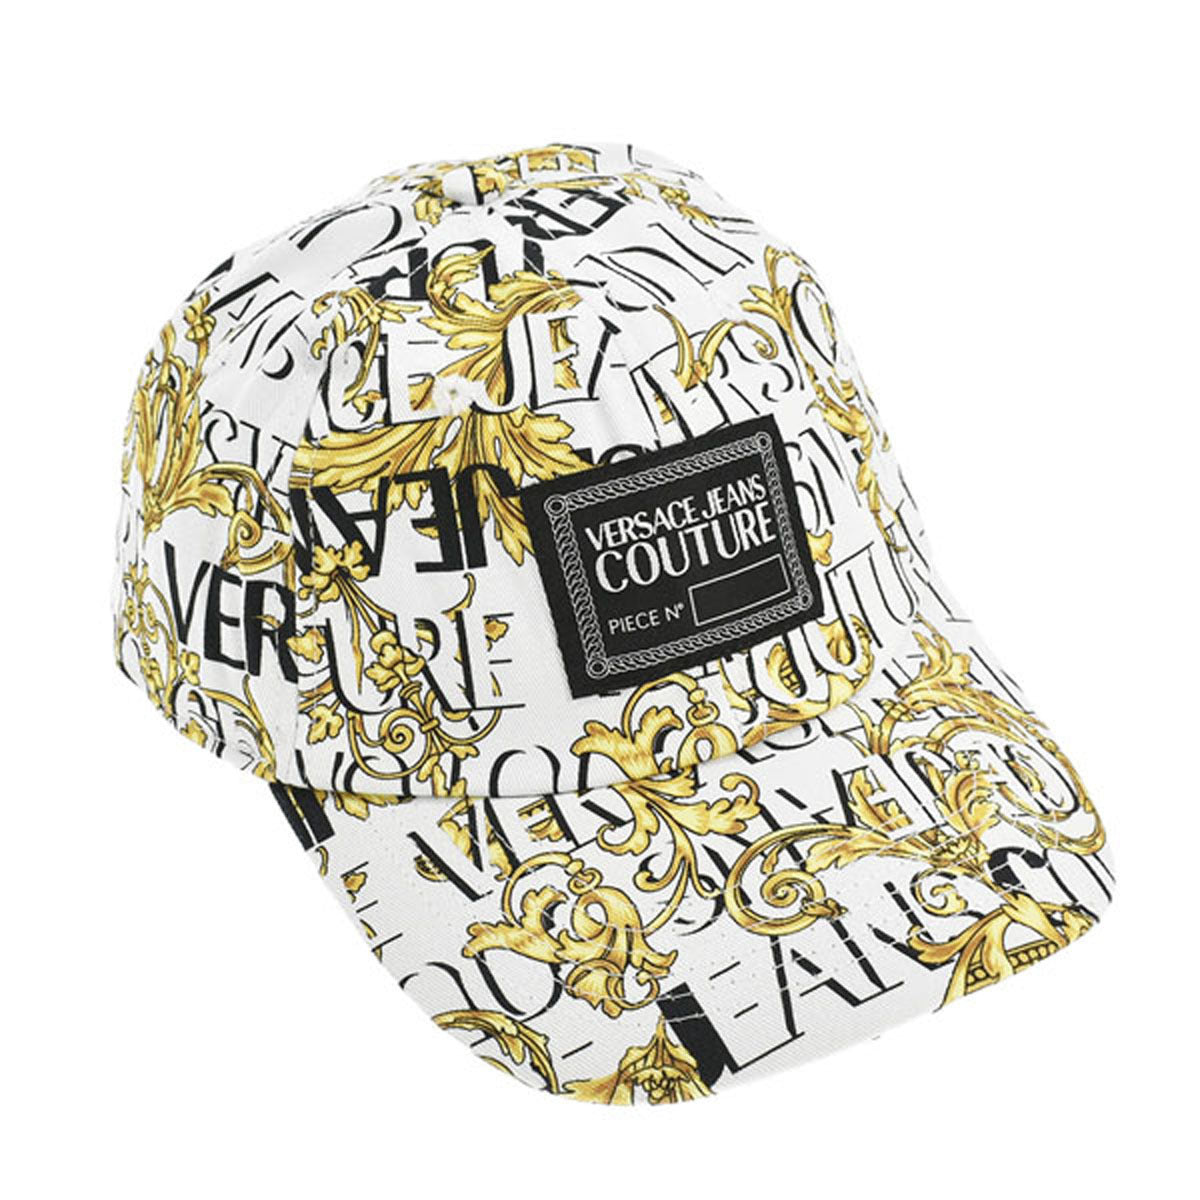 ヴェルサーチェ ジーンズ クチュール VERSACE JEANS COUTURE 帽子 キャップ 73YAZK18 ZG107 ベースボールキャップ  BASEBALL CAP WITH CENTRAL SEWING CIRCONFERENZ WHITE/GOLD ホワイト+ゴールド系